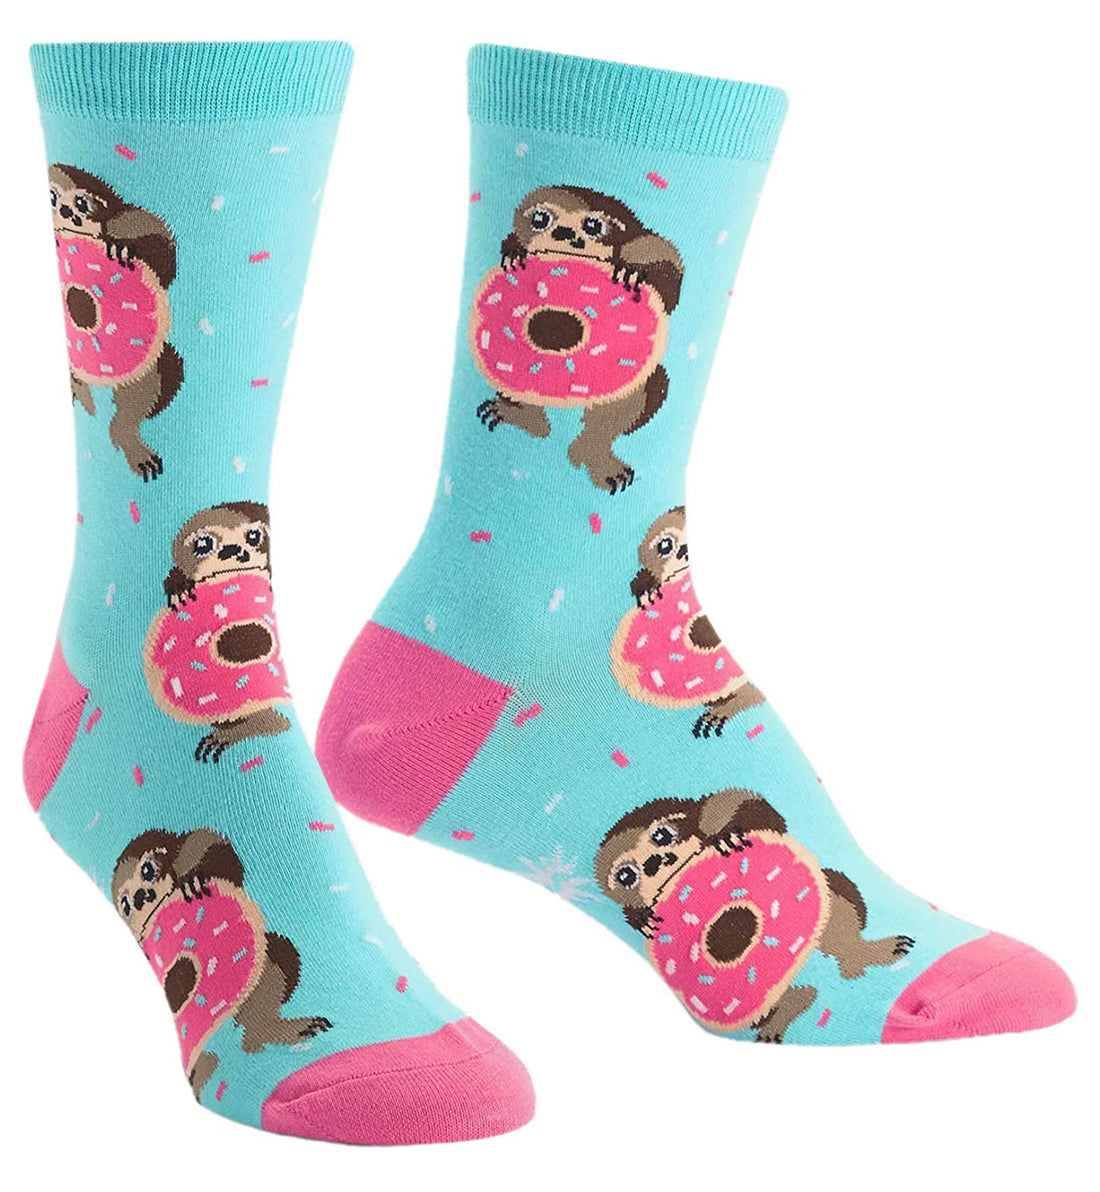 SOCK it to me Women's Crew Socks (w0100),Snackin' Sloth - Snackin' Sloth,One Size